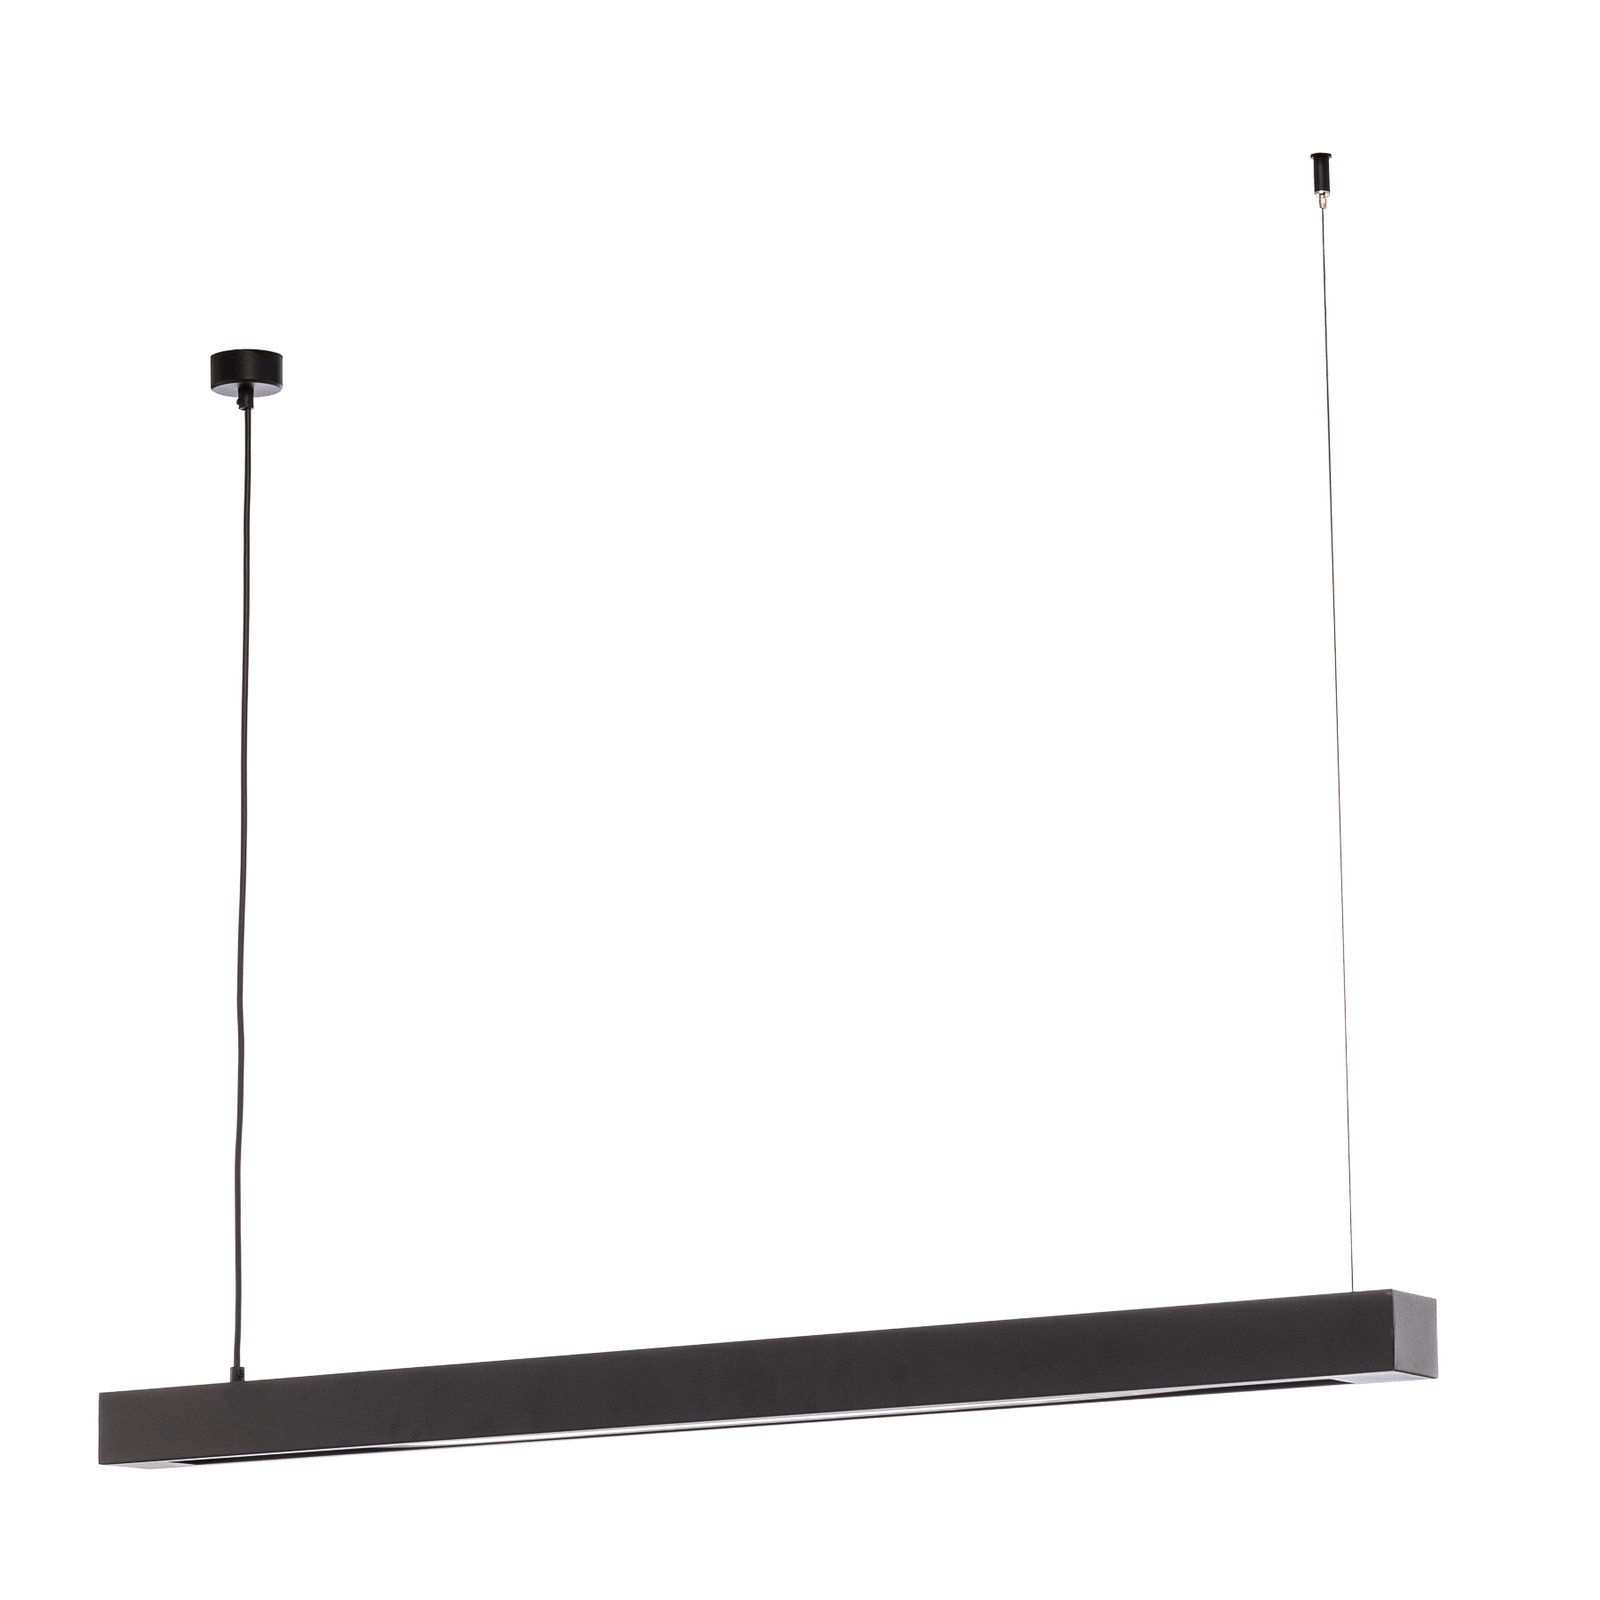 Lungo pendant light, black, 124 cm long